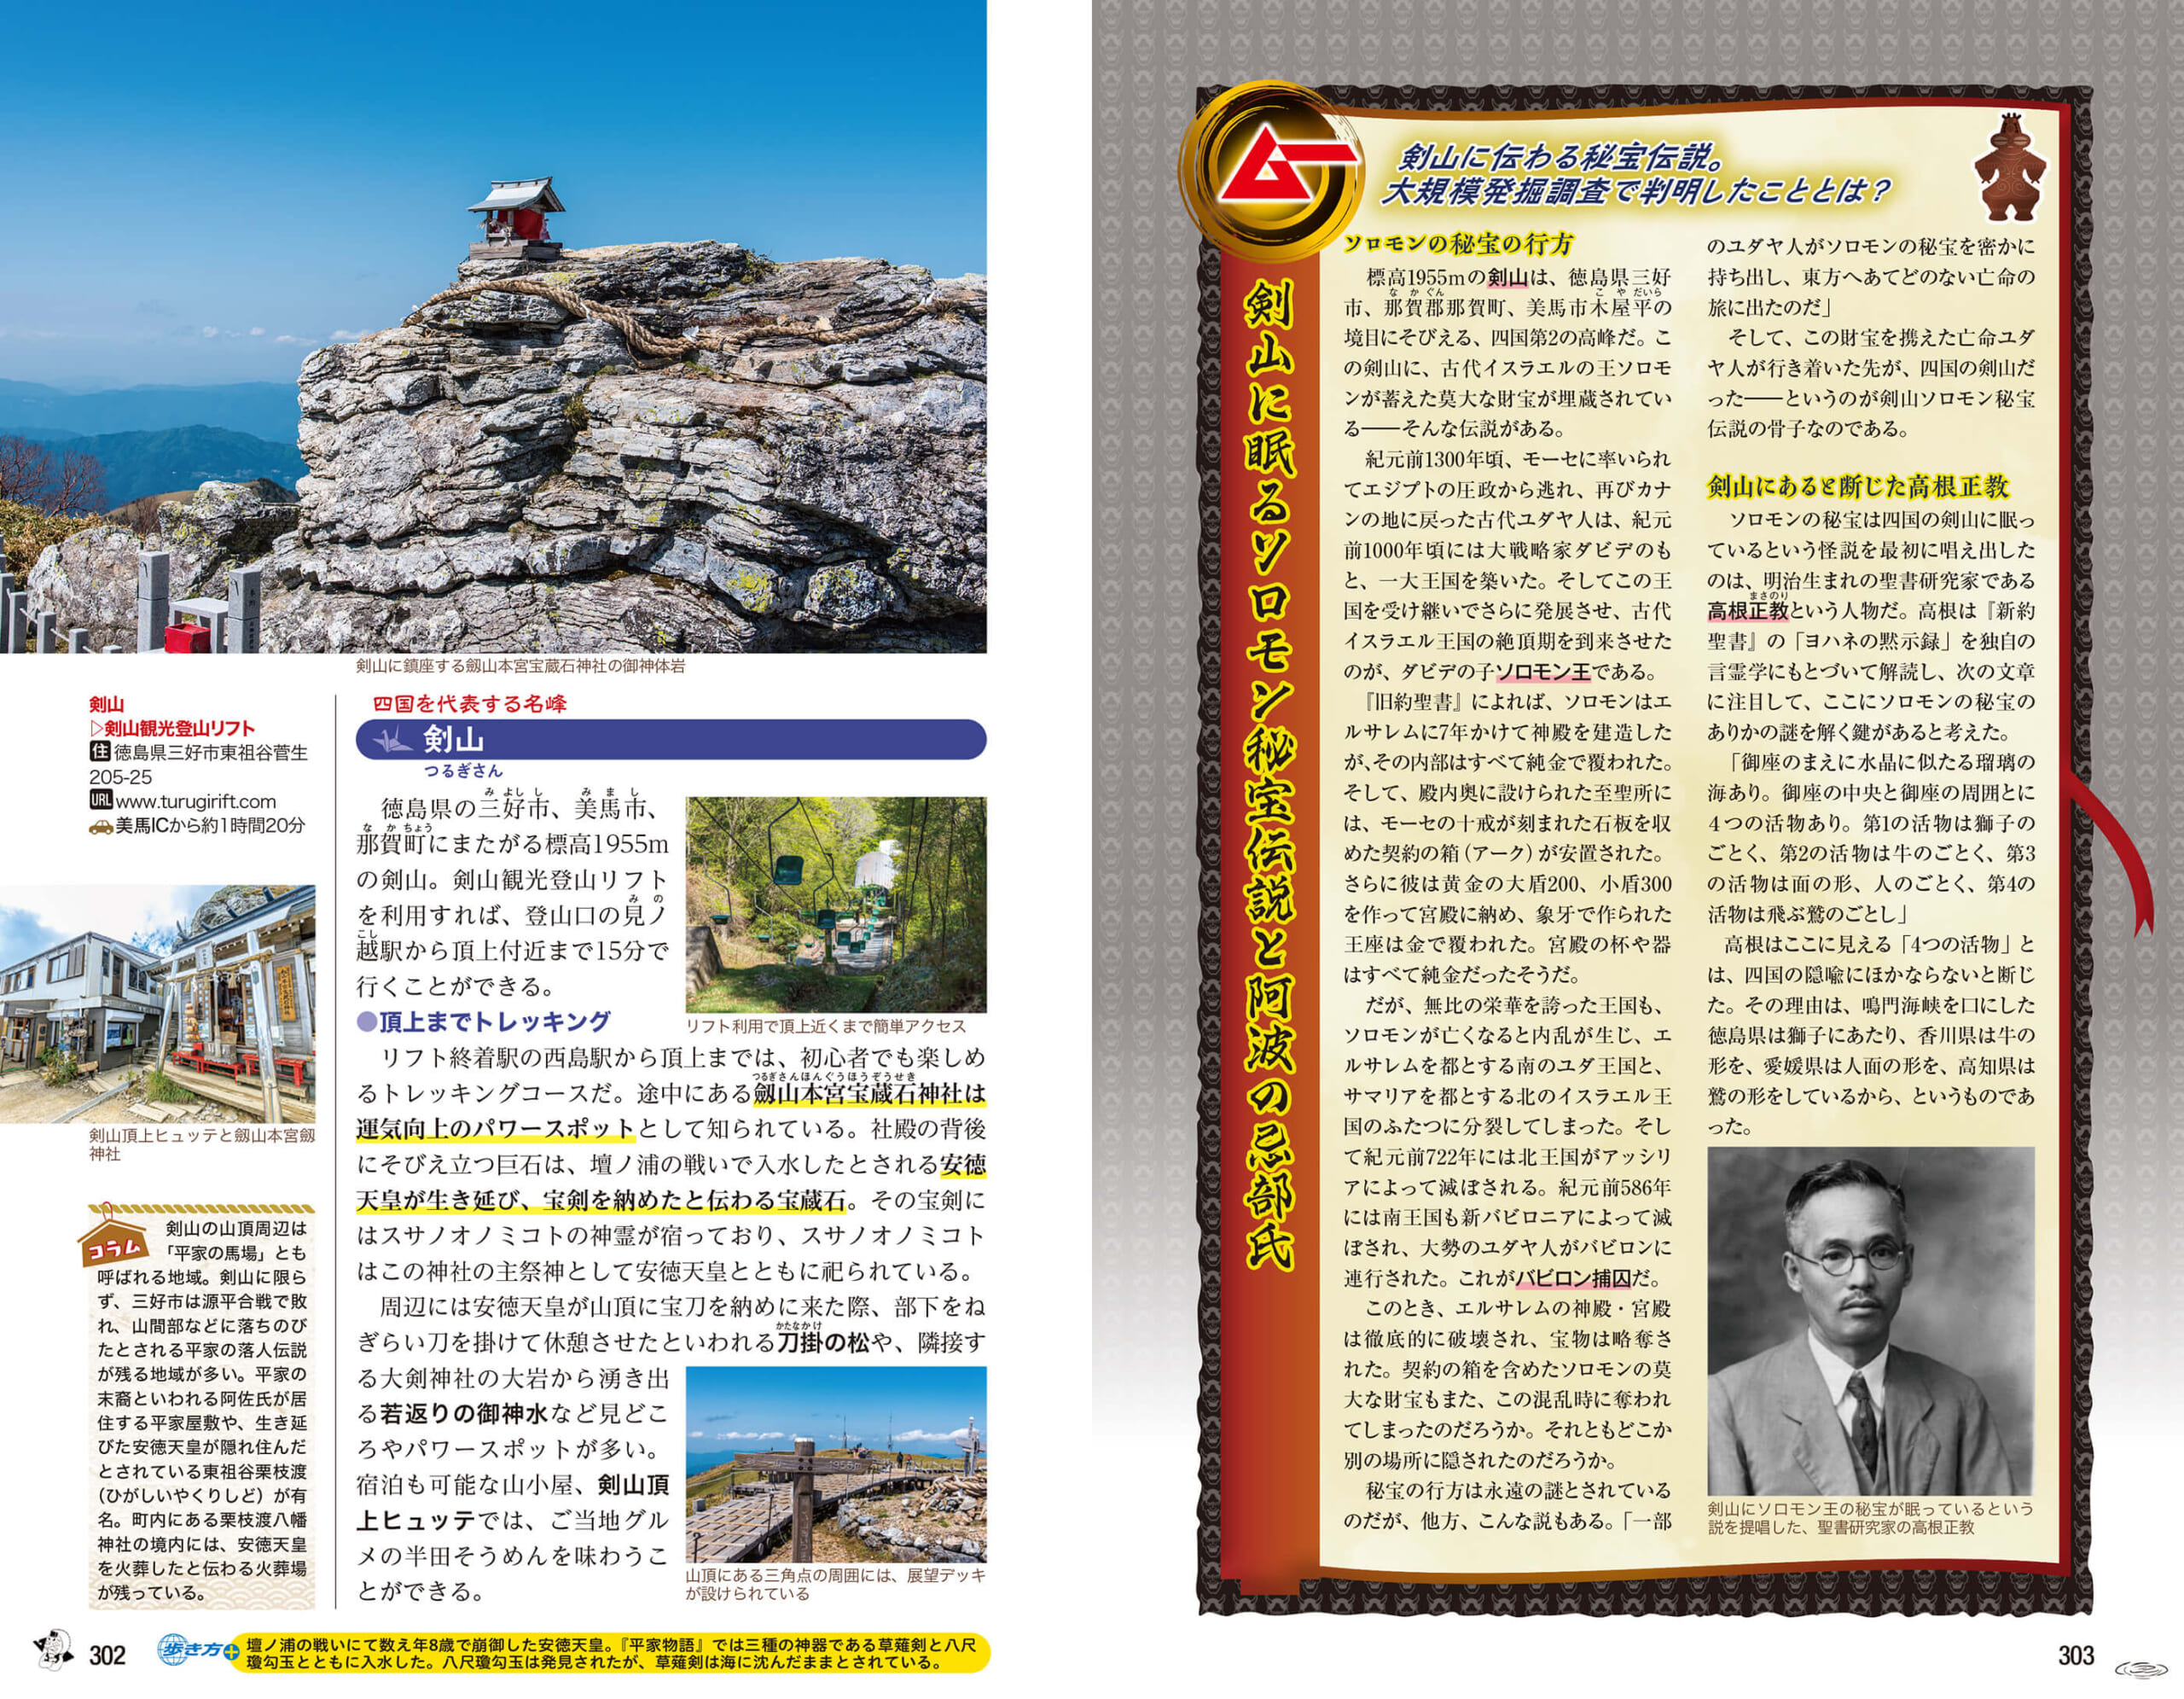 左ページが『地球の歩き方』の取材で得られた解説。右ページでは『ムー』が独自説を展開　紙面